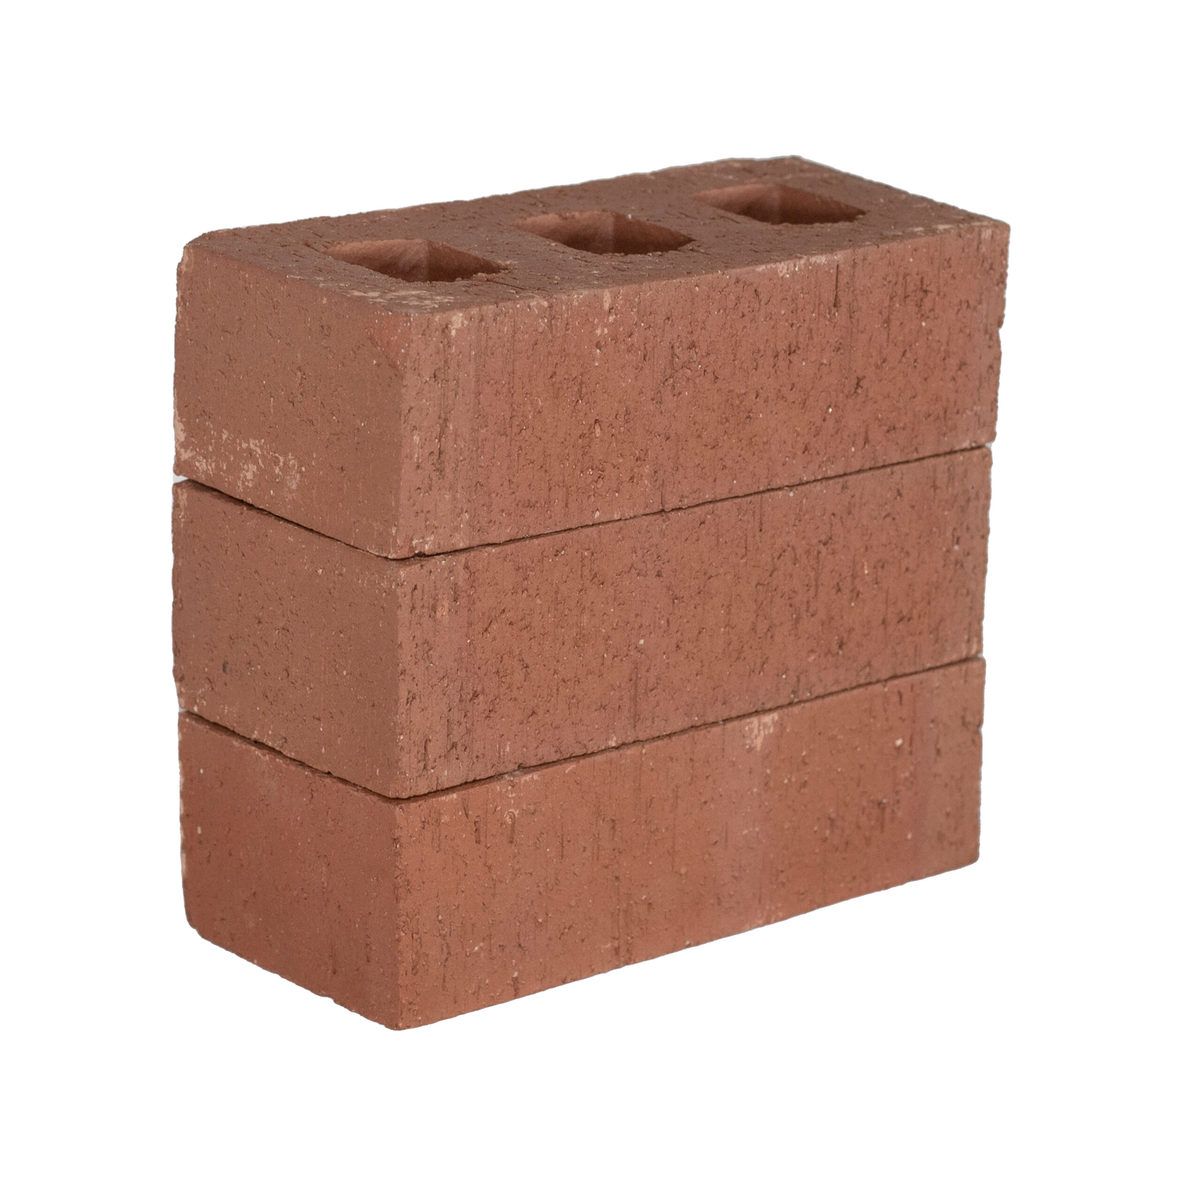 How Heavy Is 1 Brick